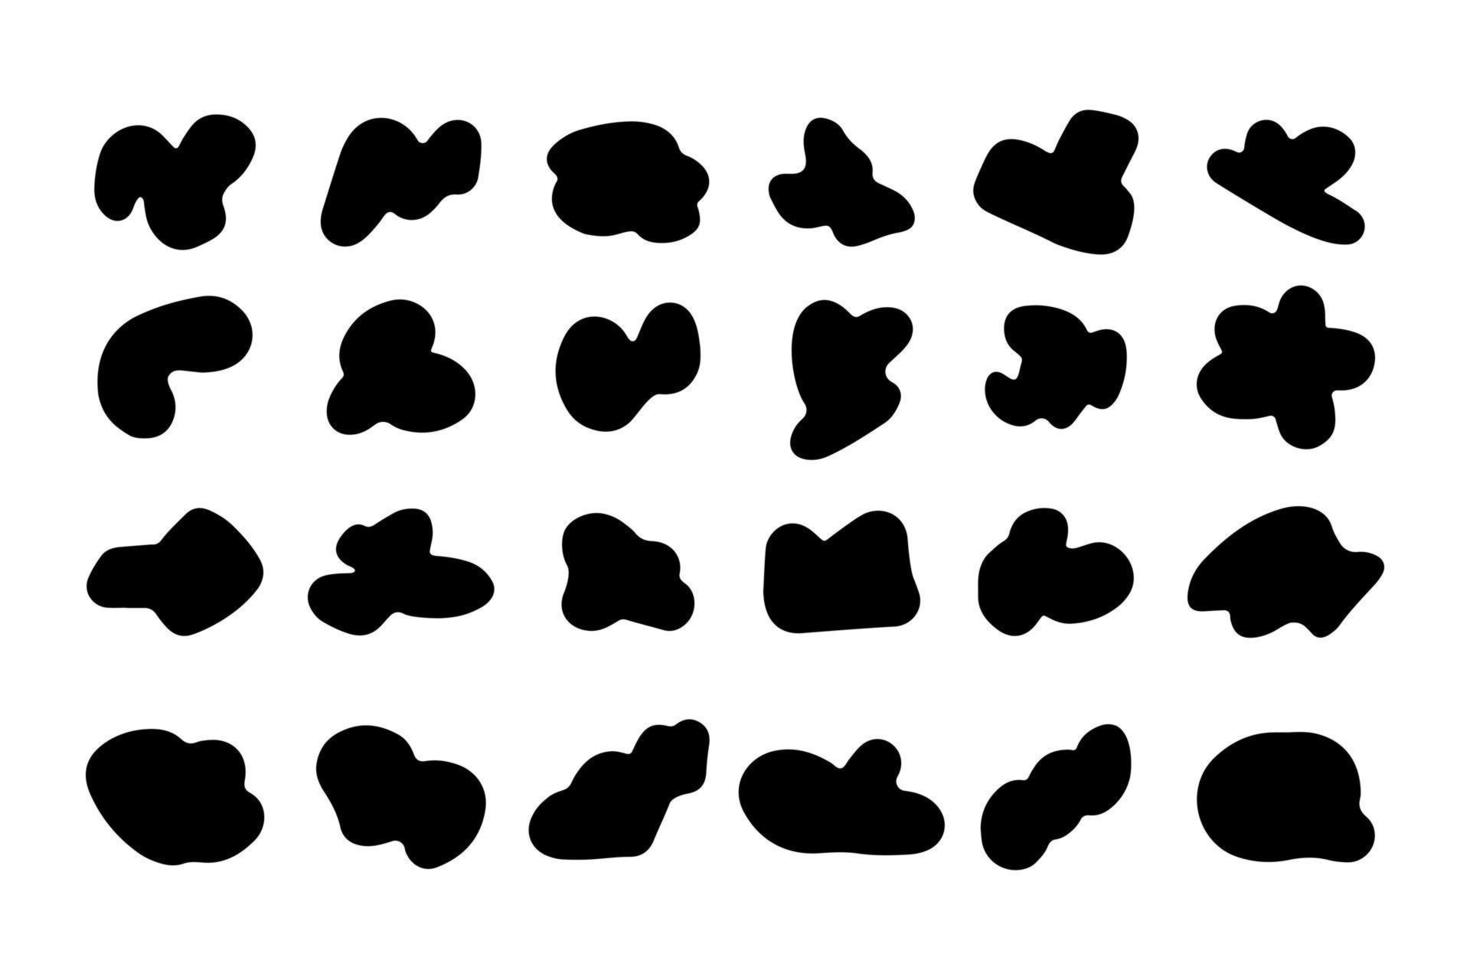 zufällige schwarze formen gesetzt. Blob-Formen. organische abstrakte splodge-elemente monochrome sammlung. Vektor. vektor